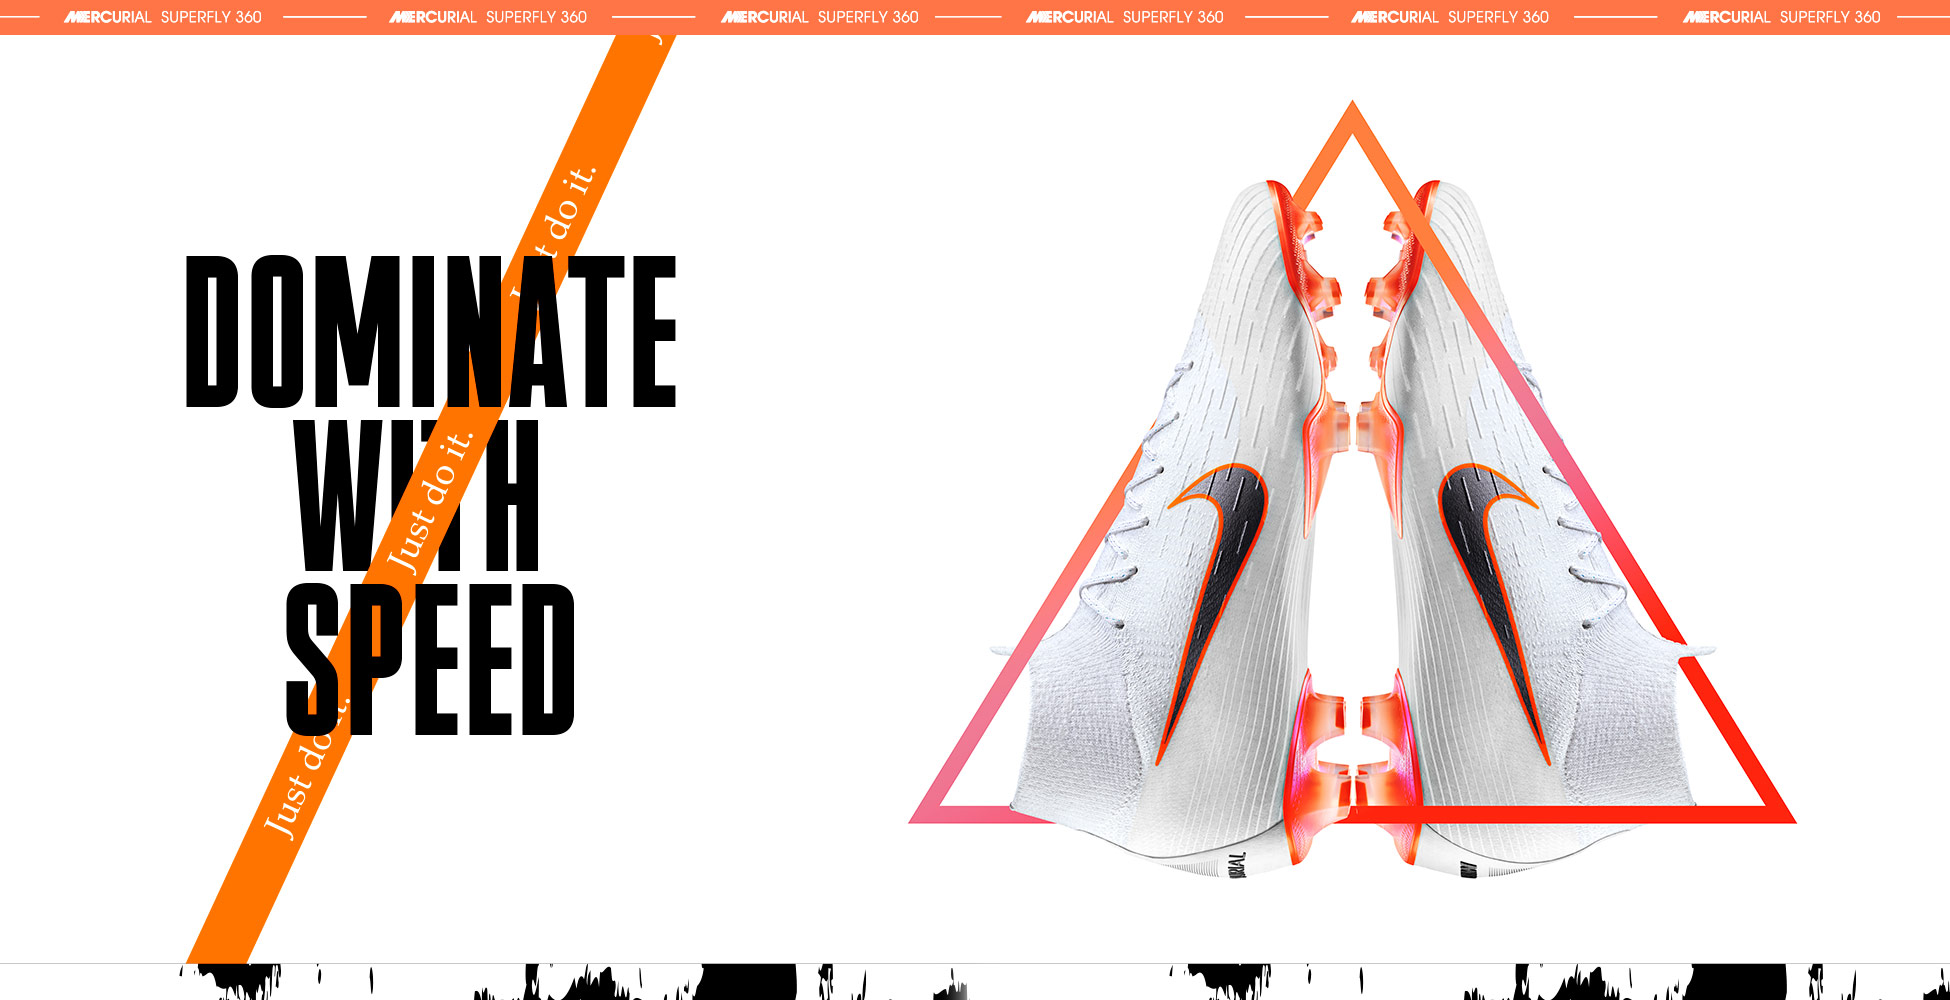 Nike Magista Orden II AG Pro, Zapatillas de Fútbol para